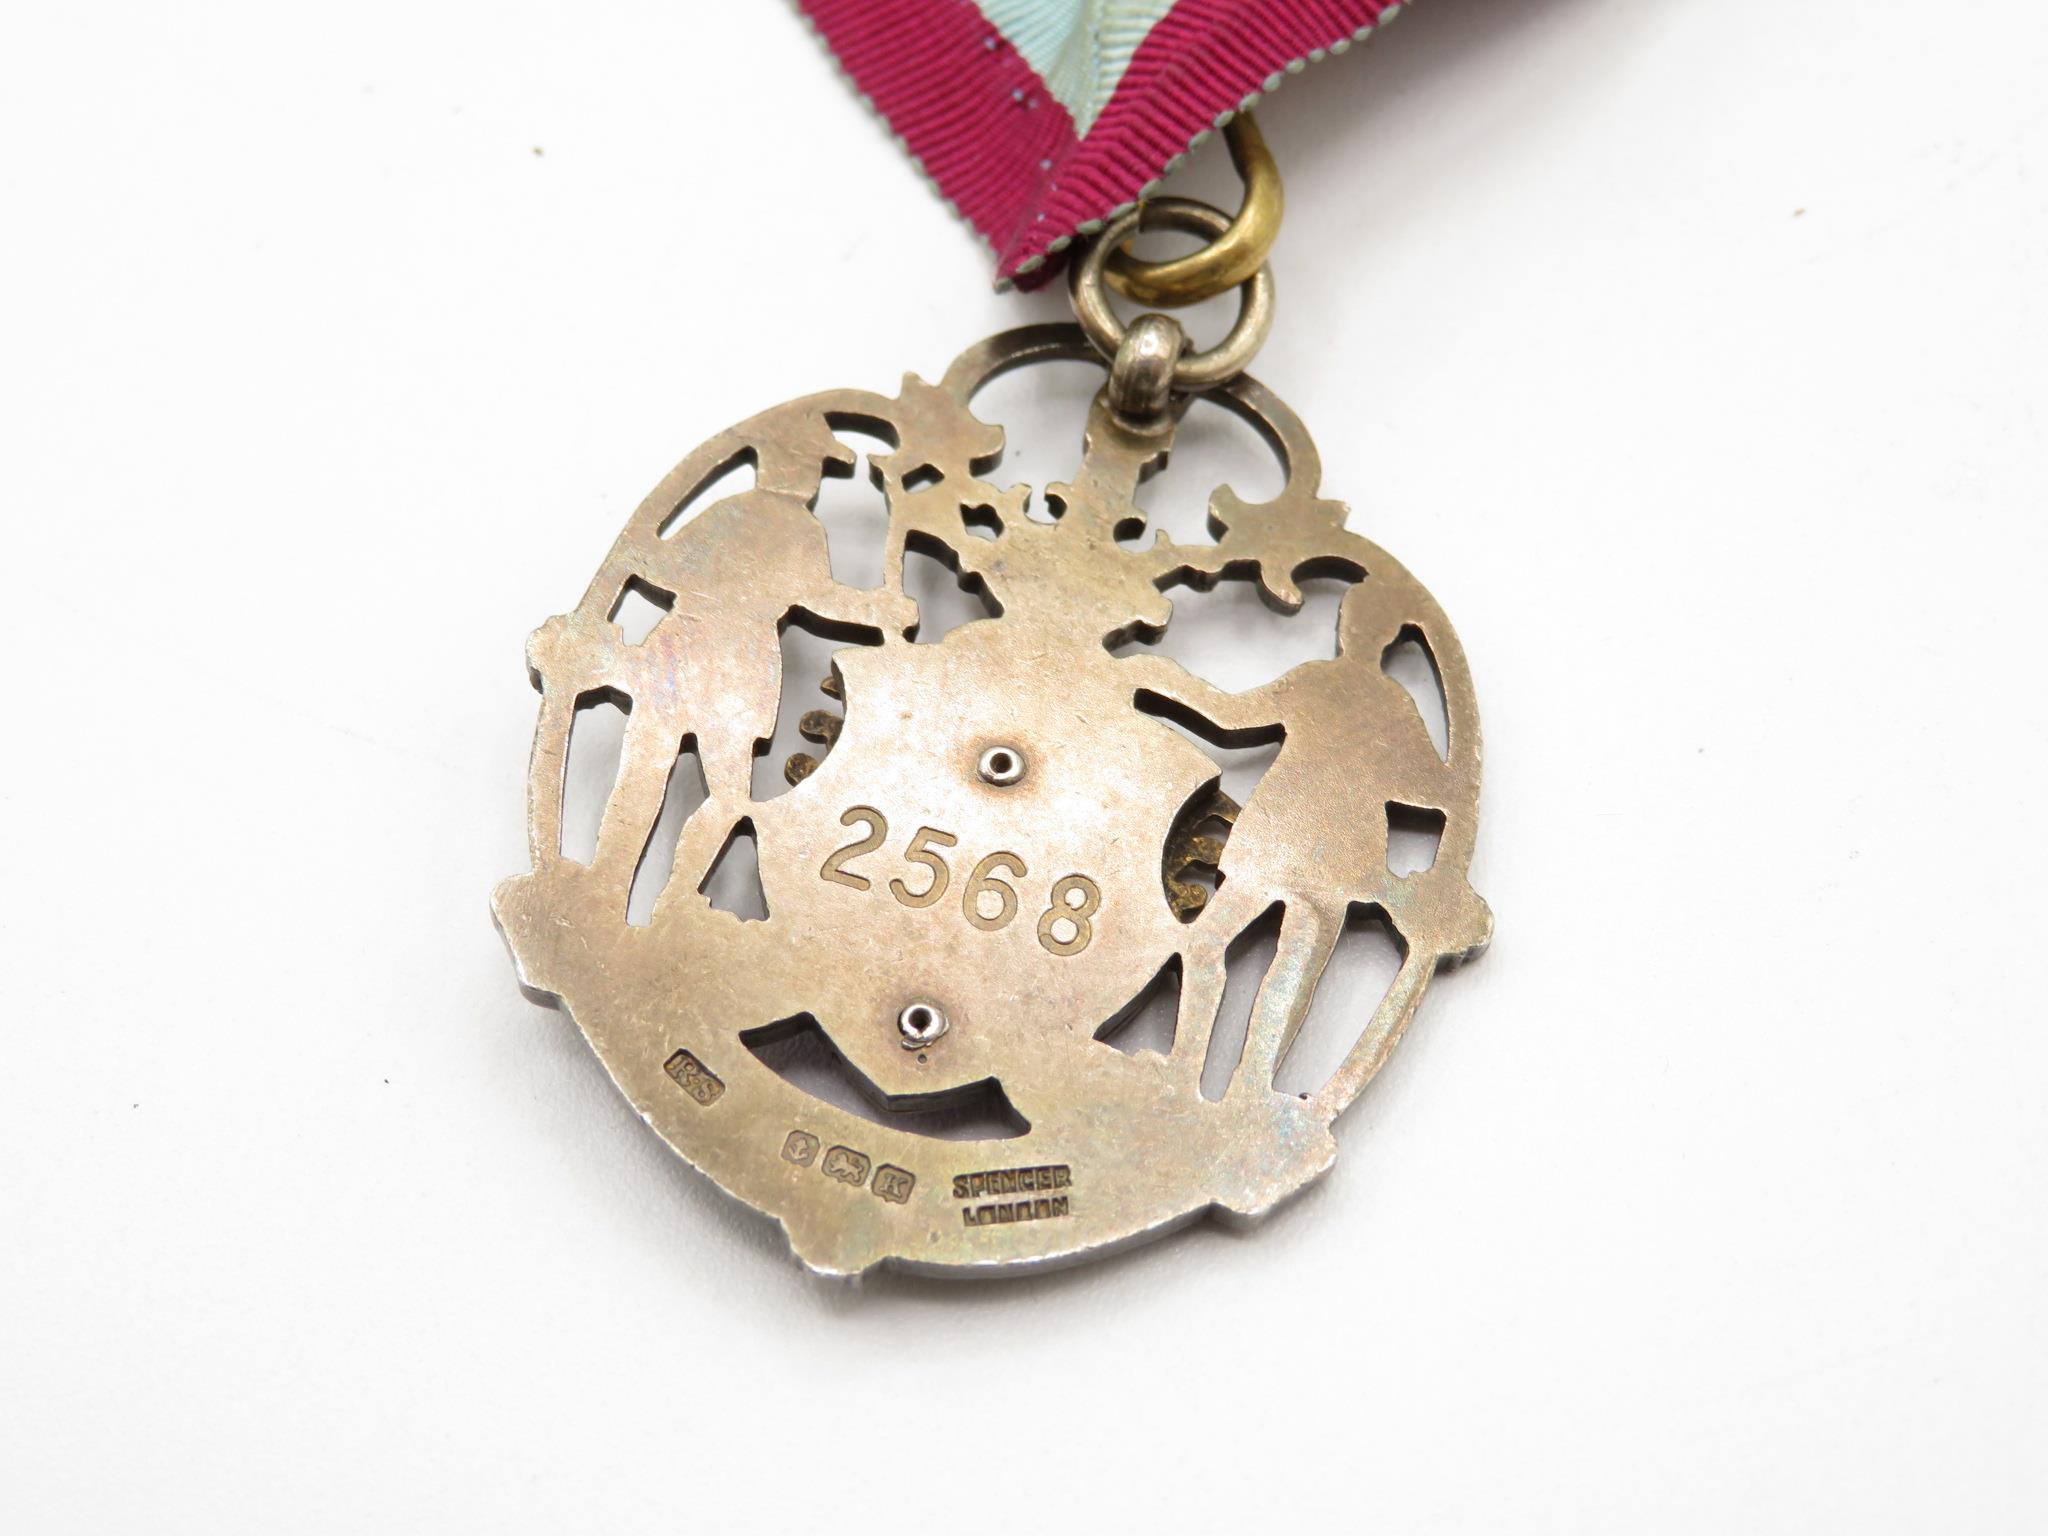 Silver and enamel Masonic regalia with sash band 42g - Image 4 of 4